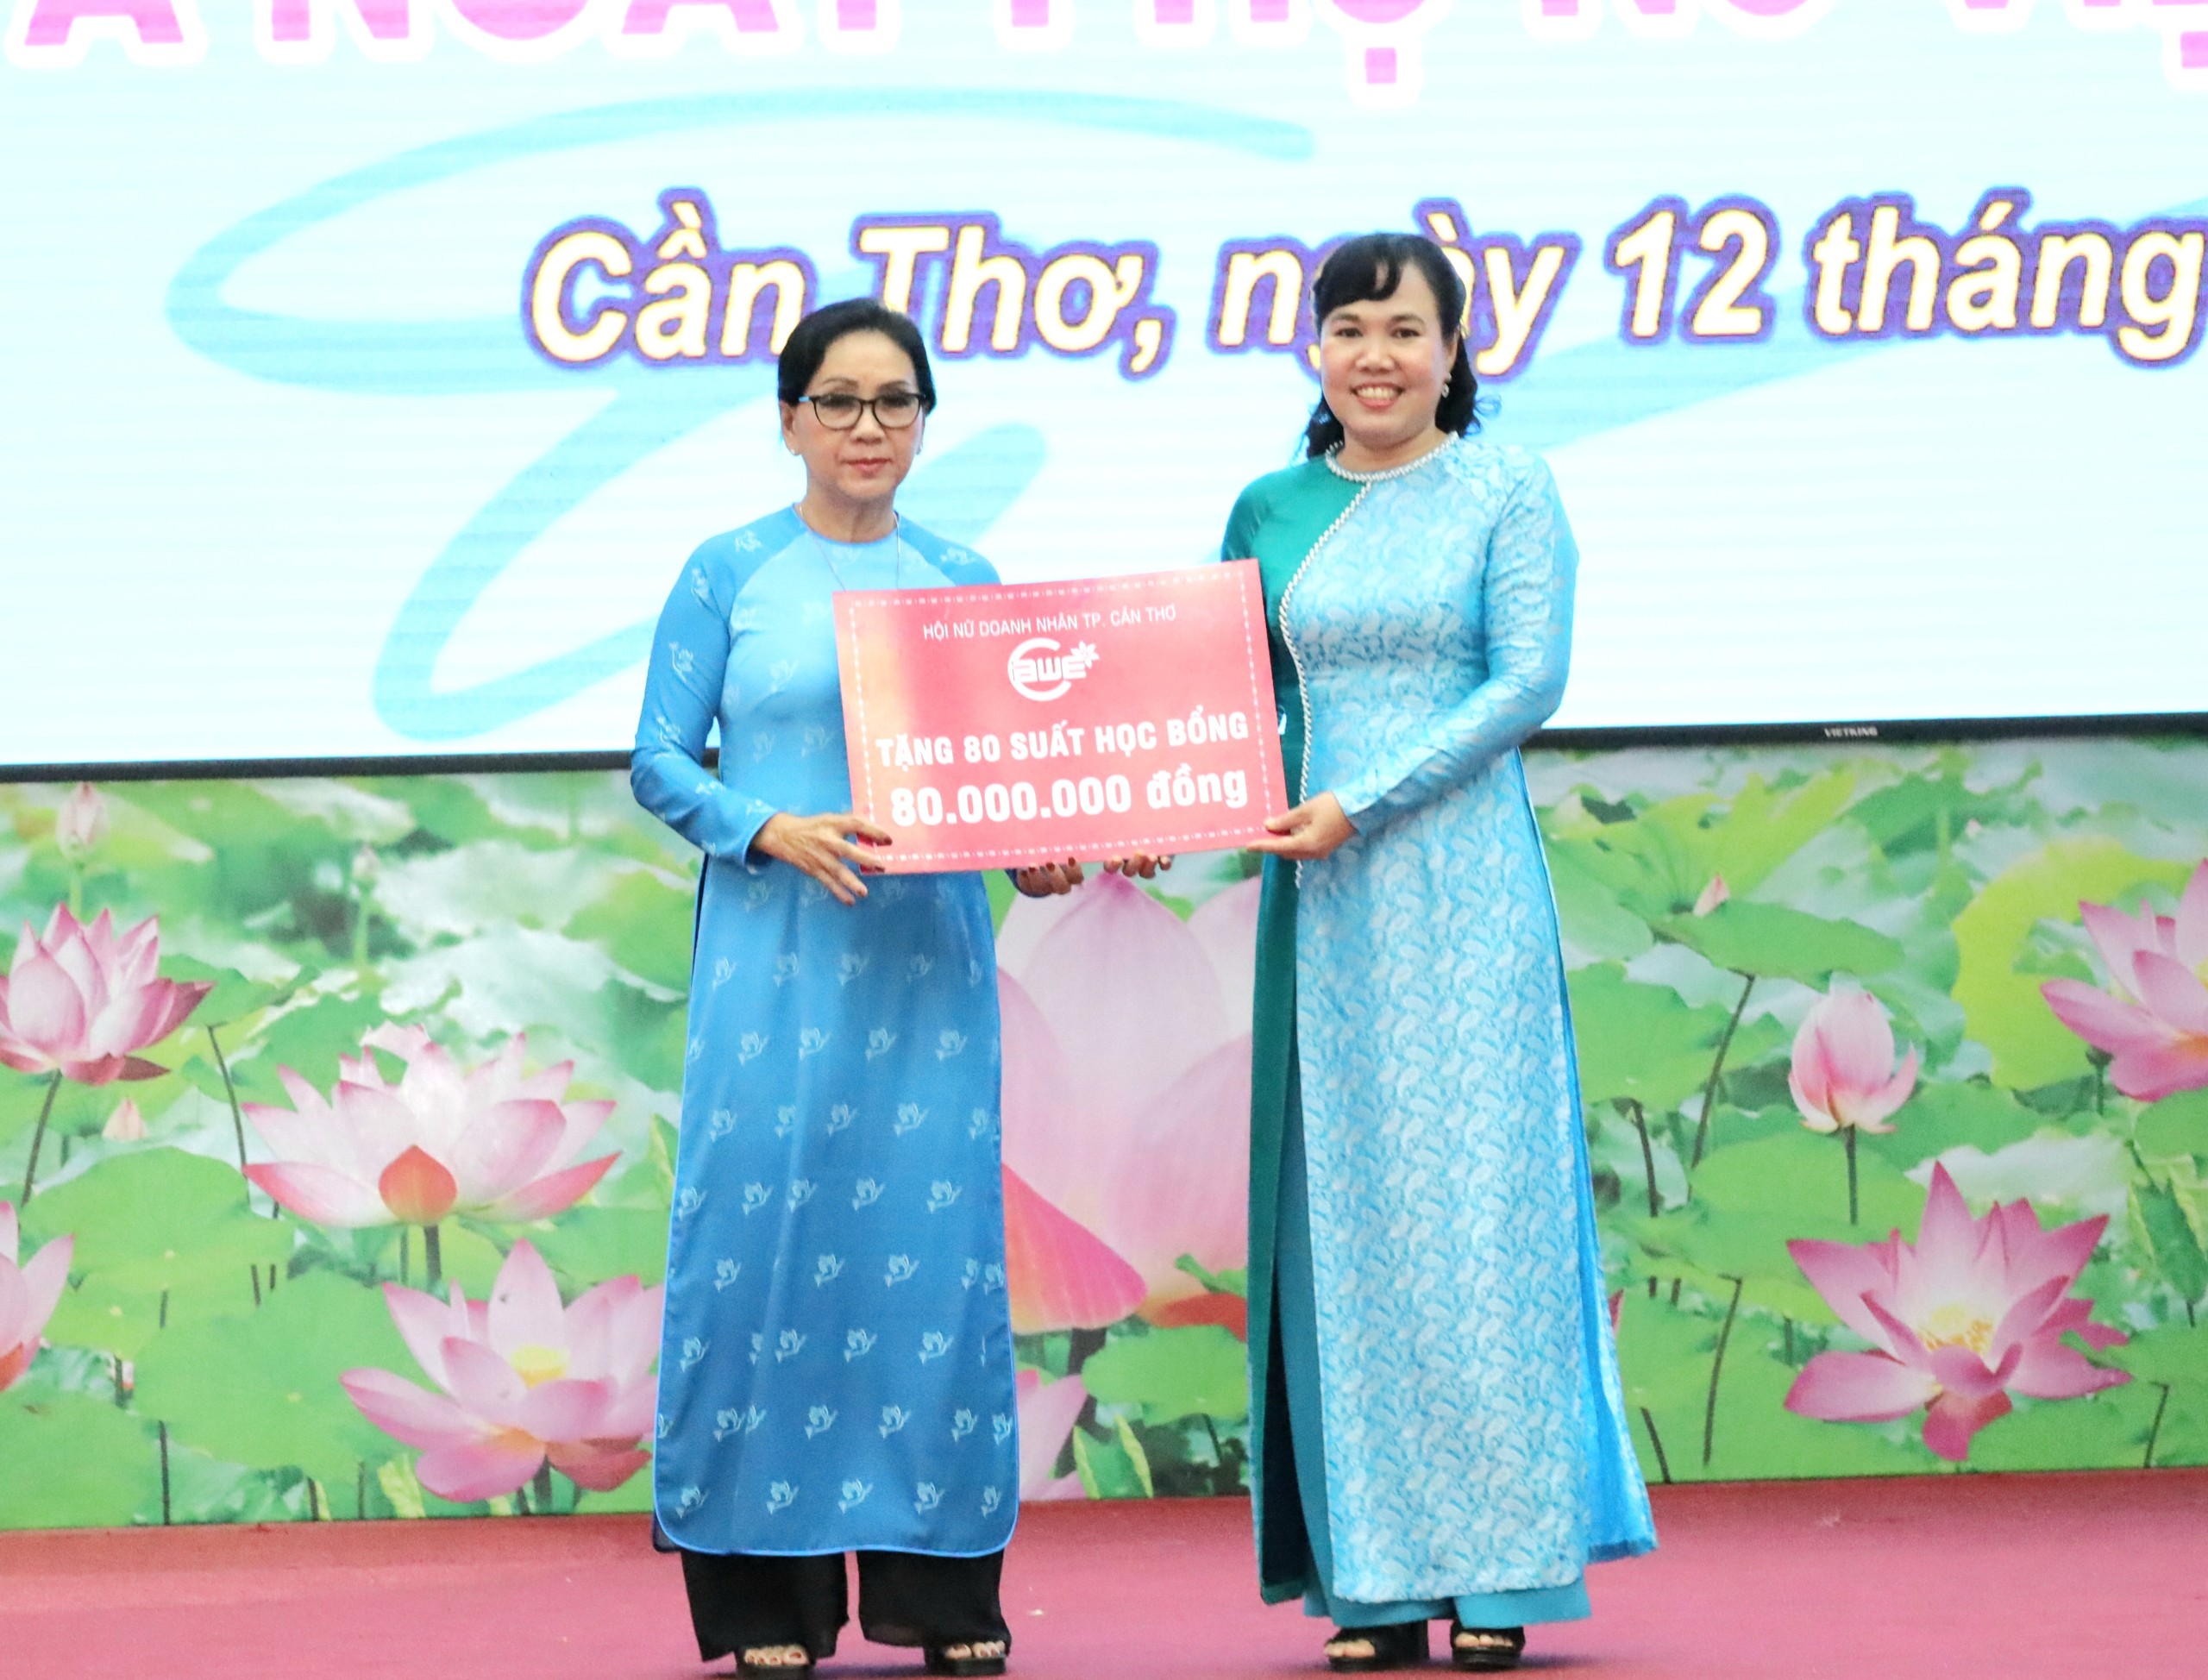 Bà Tạ Thị Thu - Chủ tịch Hội Nữ Doanh nhân TP. Cần Thơ trao tặng 80 suất học bổng cho nữ học sinh vượt khó học giỏi với trị giá 80 triệu đồng.